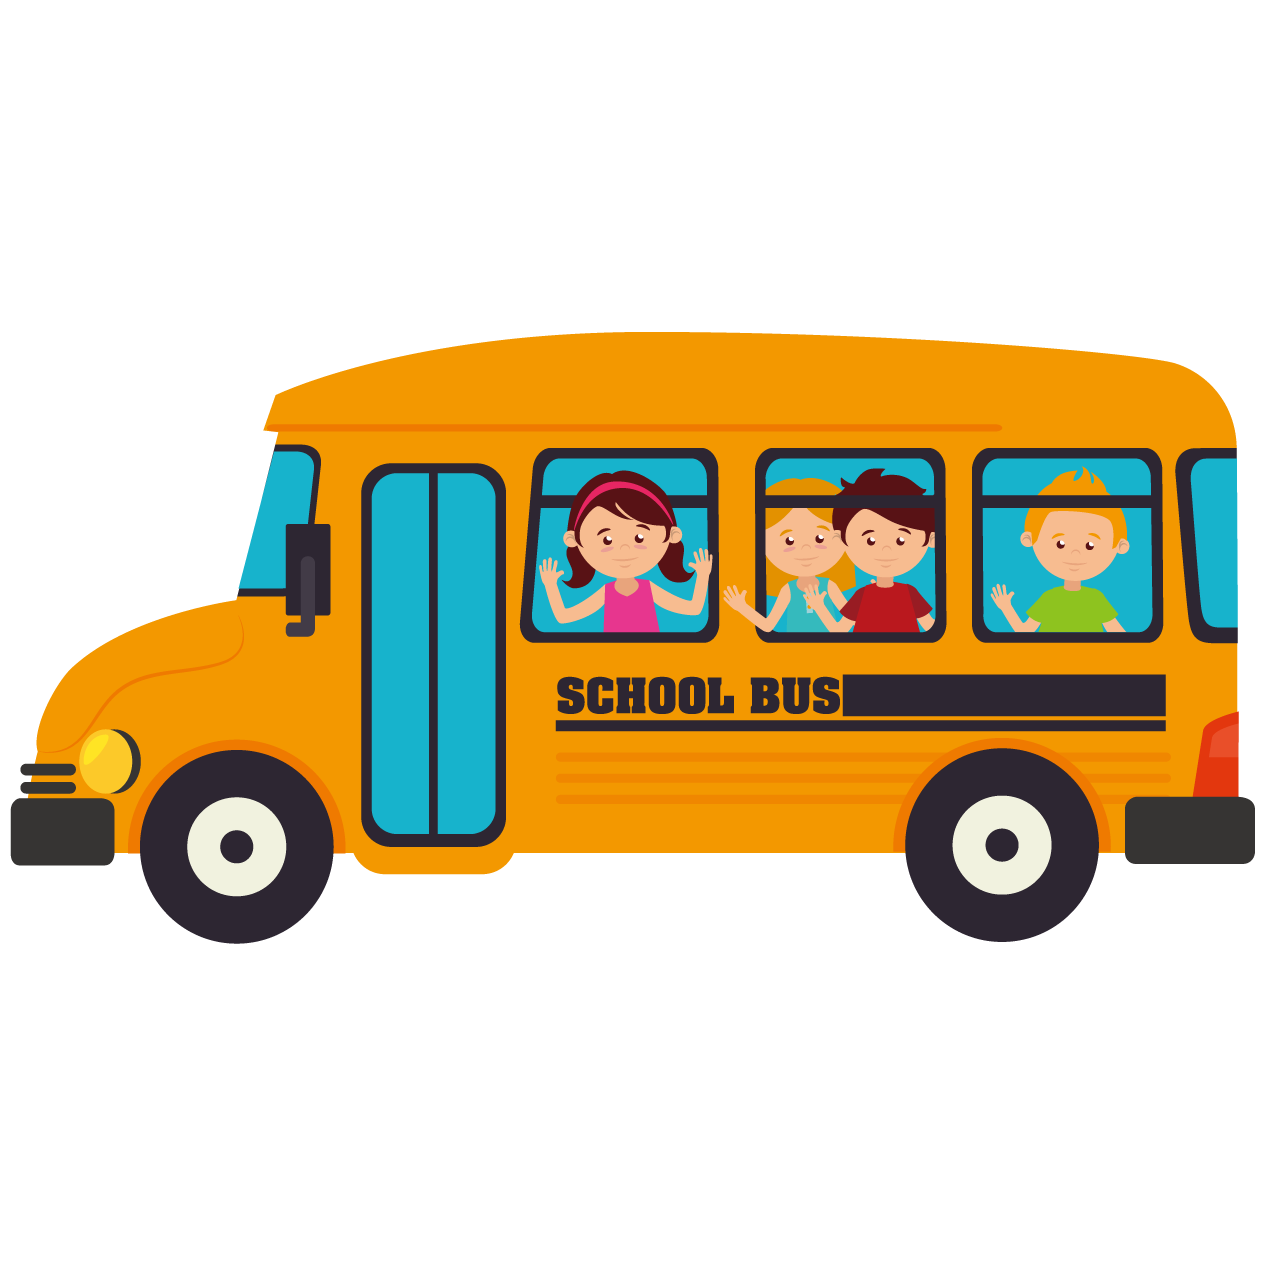 School bus Transport - Cartoon school bus png download - 1276*1276